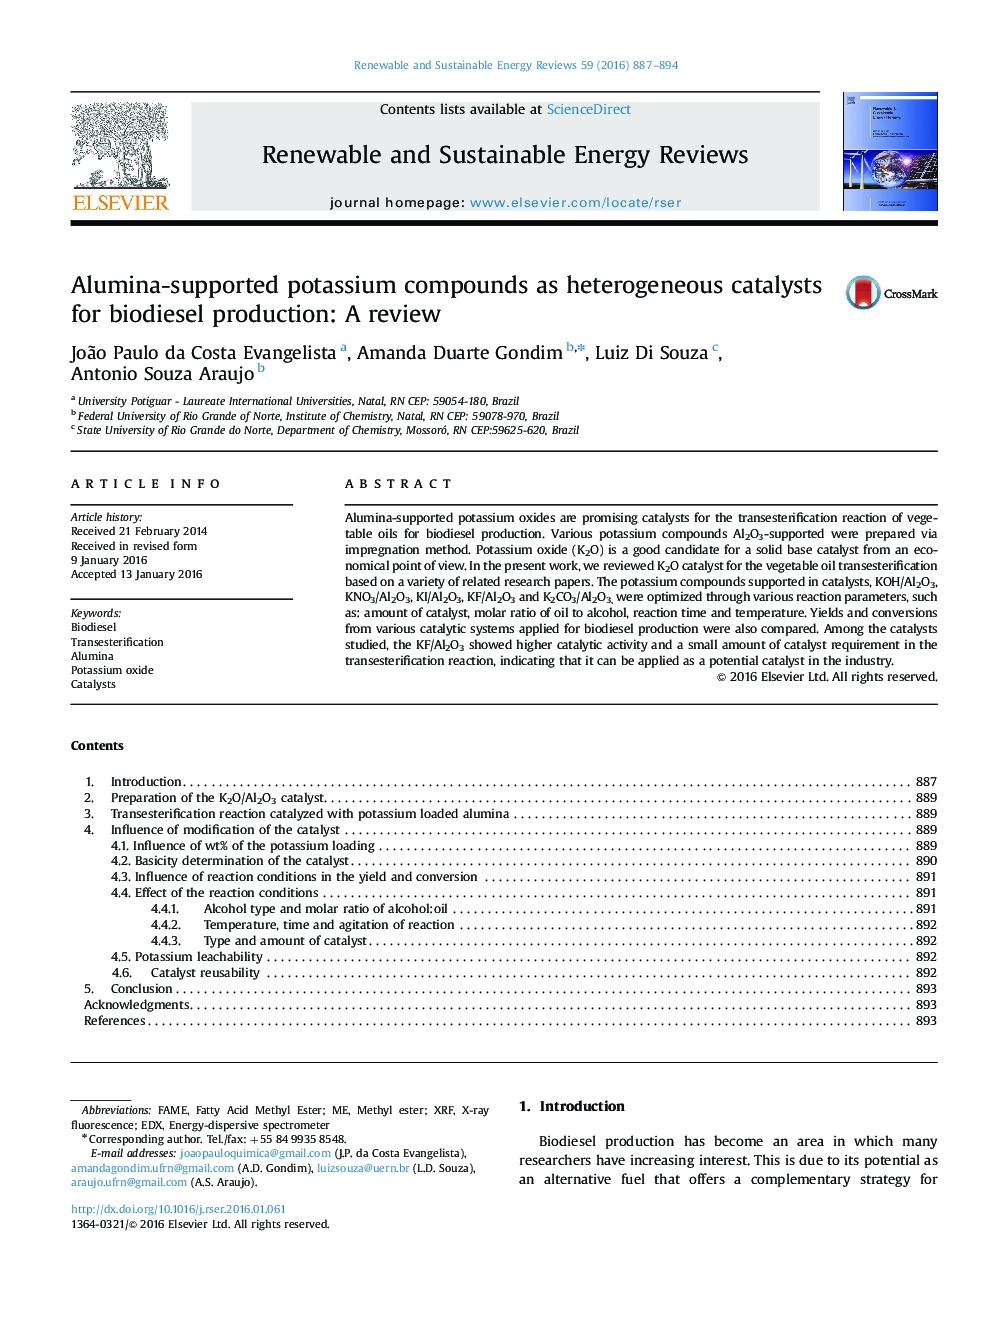 ترکیبات پتاسیم با آلومینا به عنوان کاتالیزورهای ناهمگن تولید بیودیزل: یک بررسی 